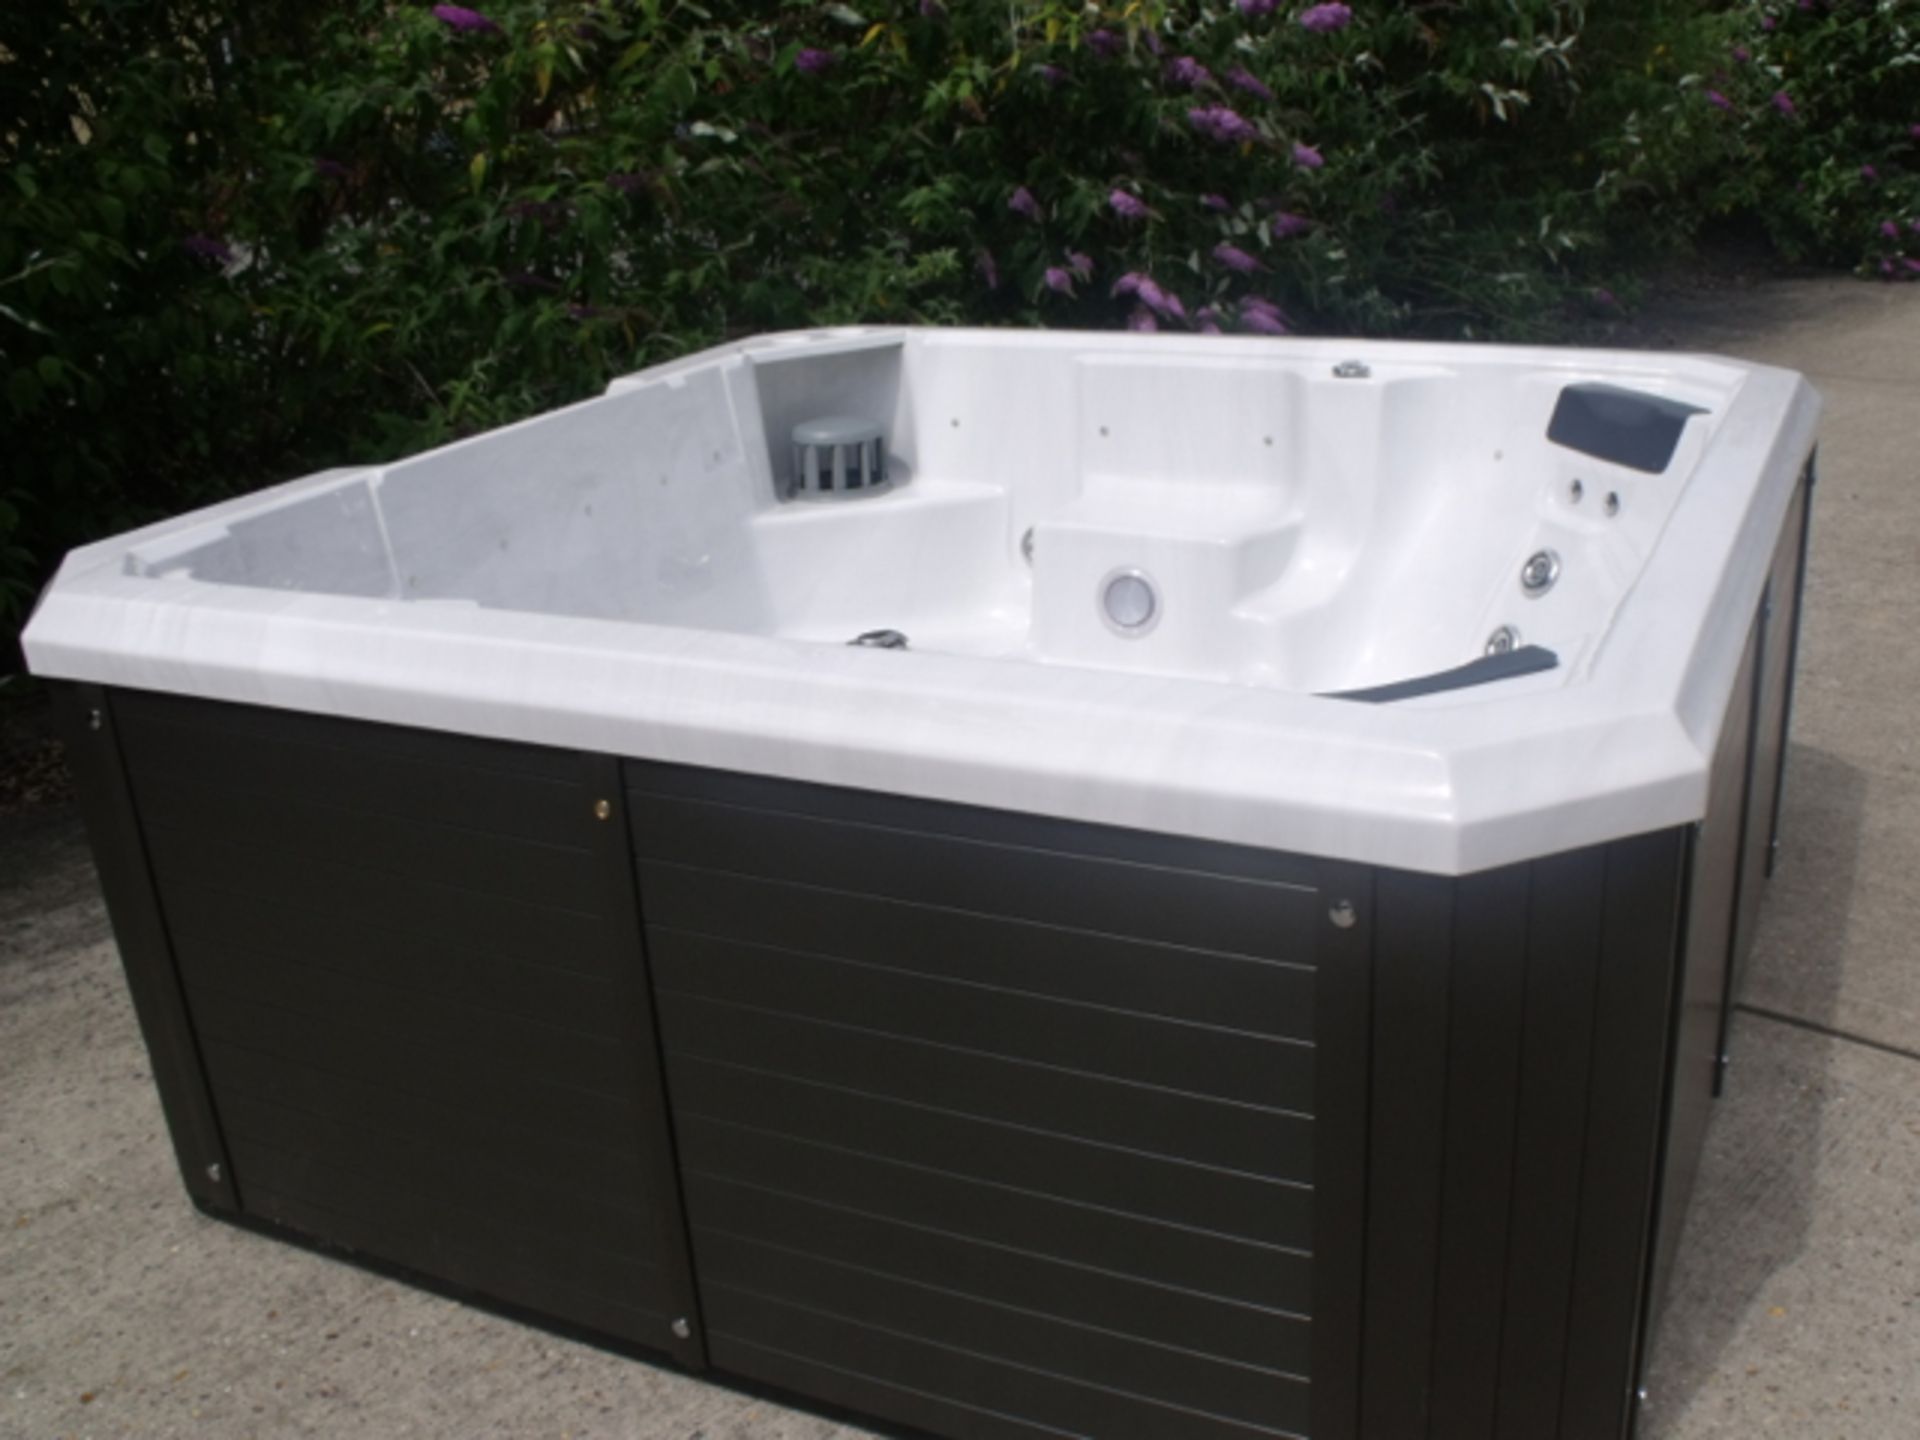 Brand New 2015 Executive Range Hot Tub. - Image 3 of 8